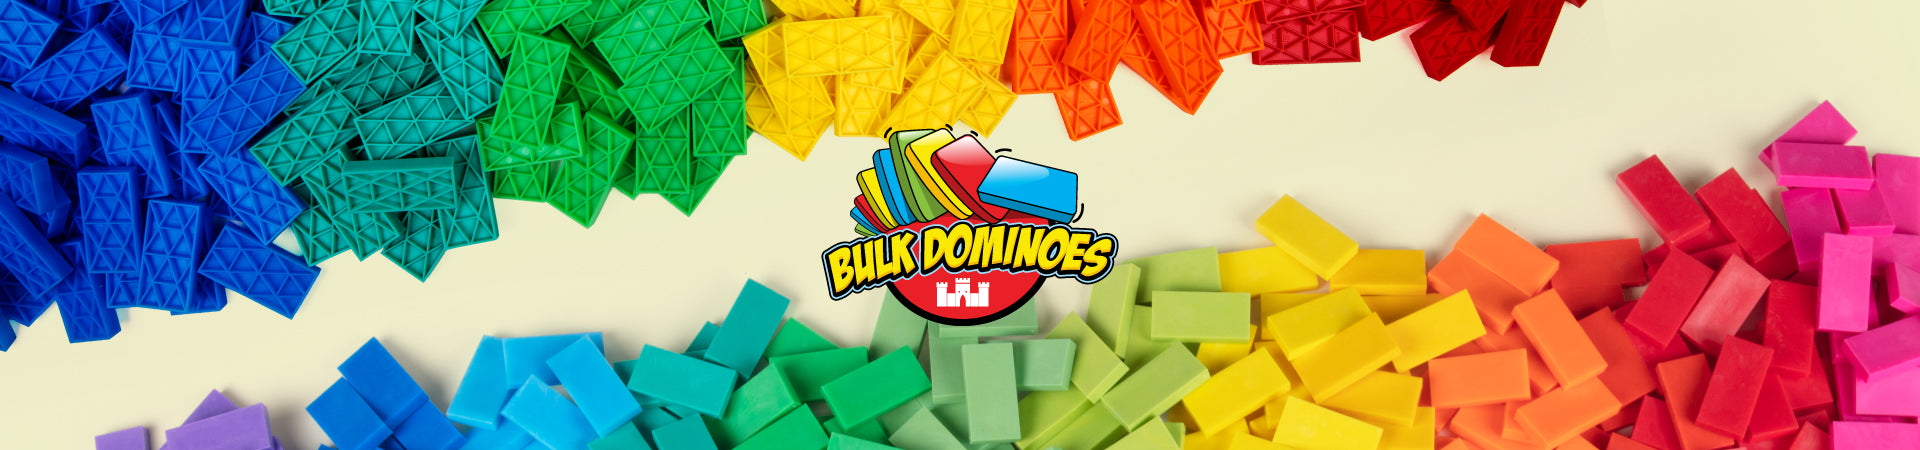 Bulk Dominoes Main Banner of Kinetics styles